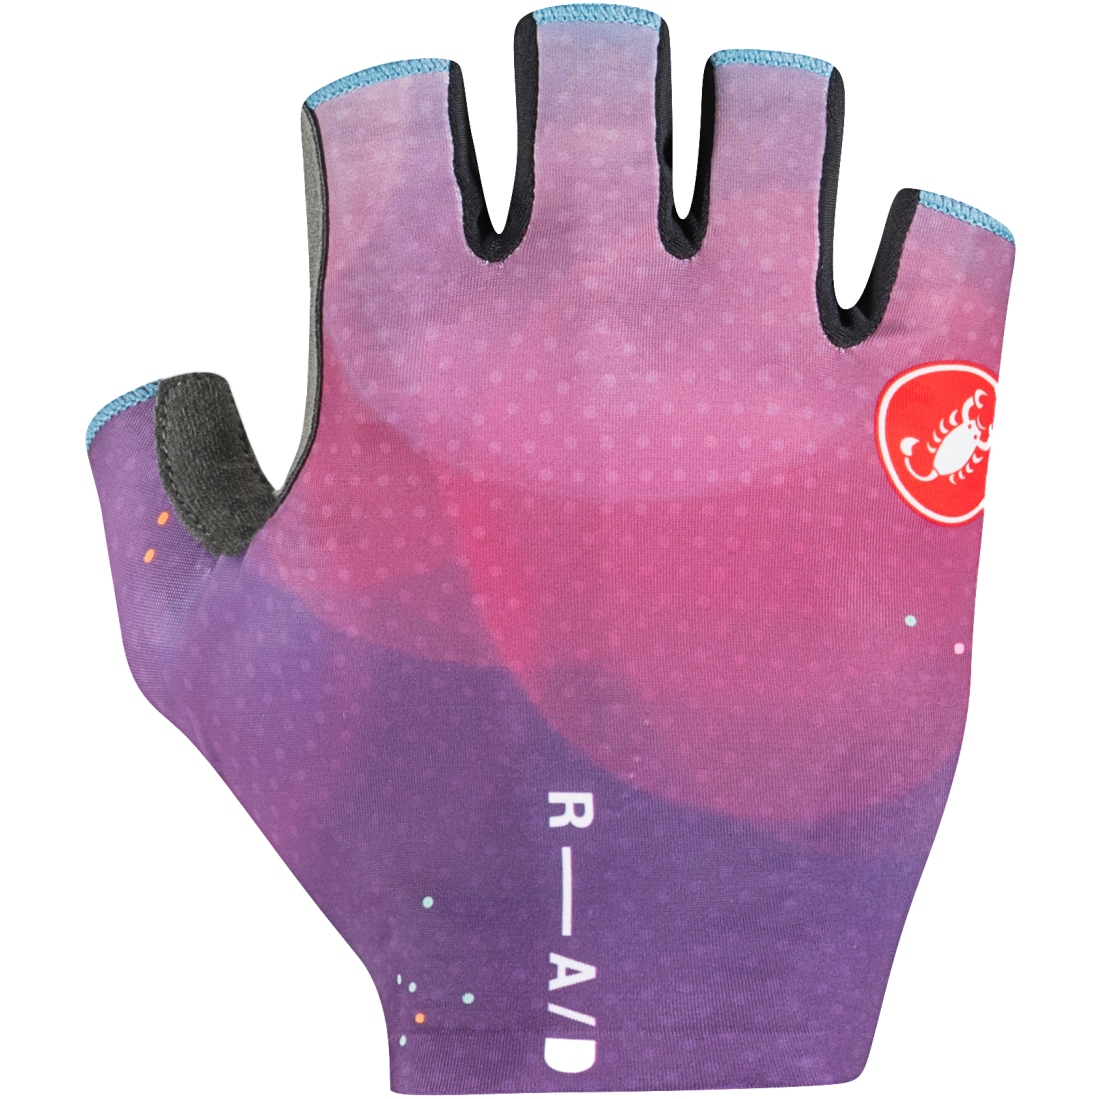 Picture of Castelli Competizione 2 Gloves - multicolor purple 990